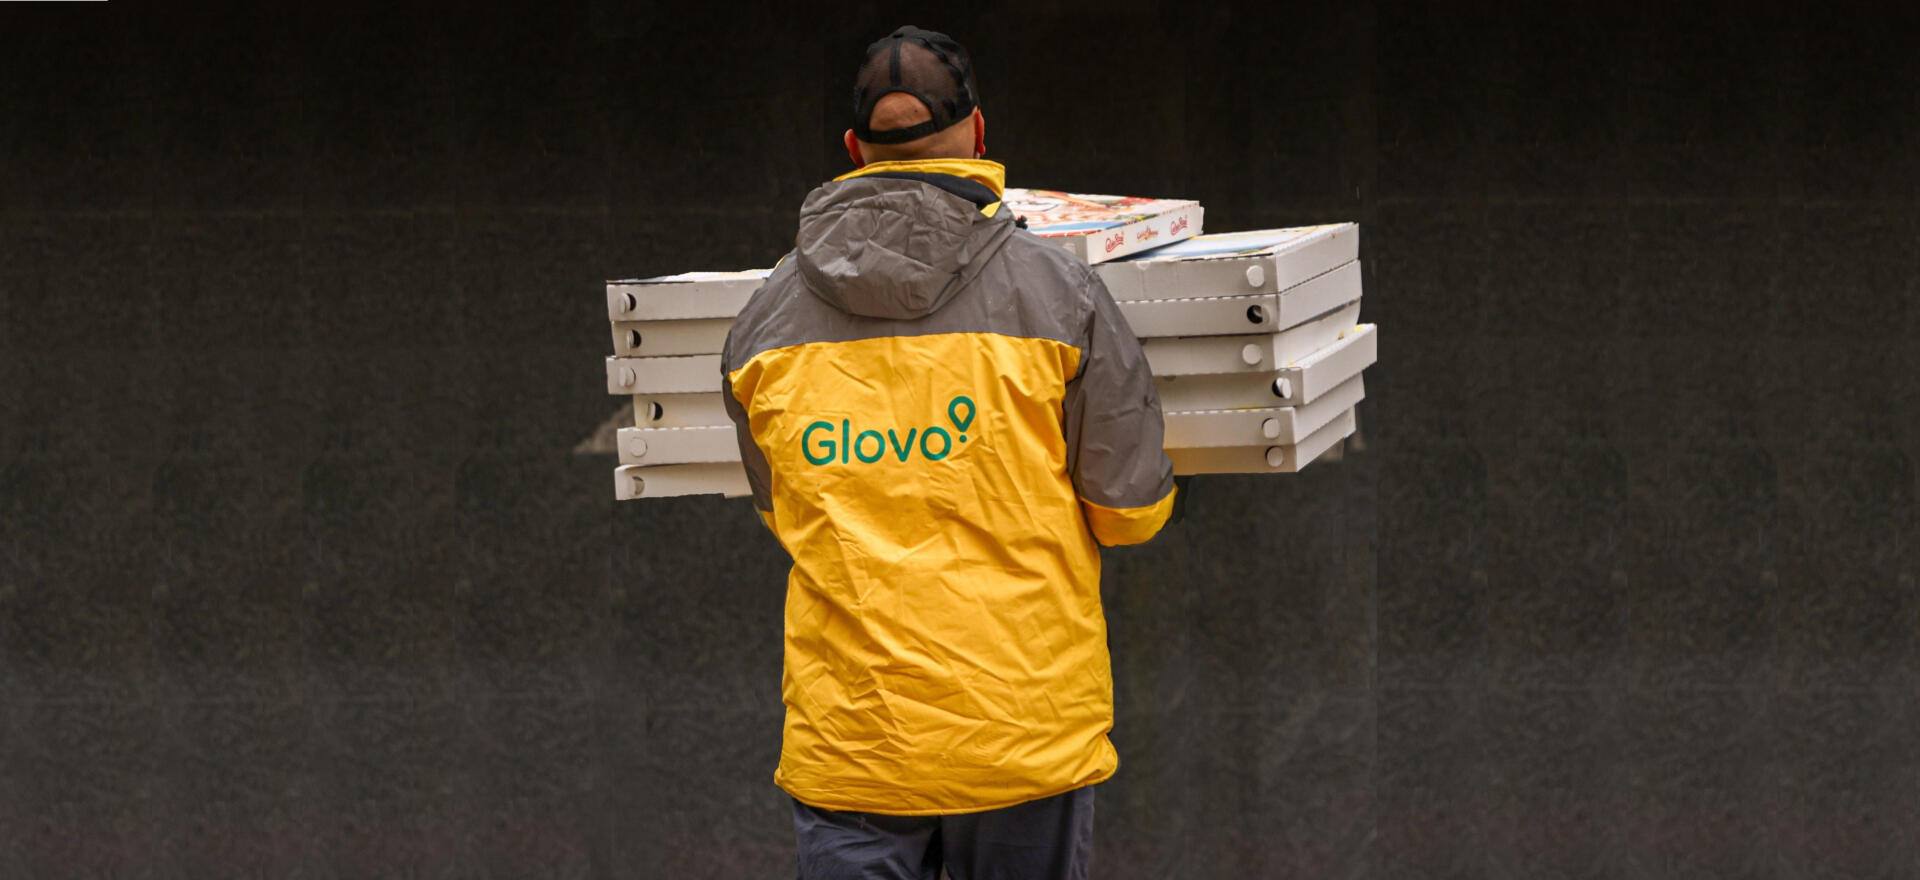 Glovo e Meter Pizza hanno sostenuto oltre 8 metri di beneficenza